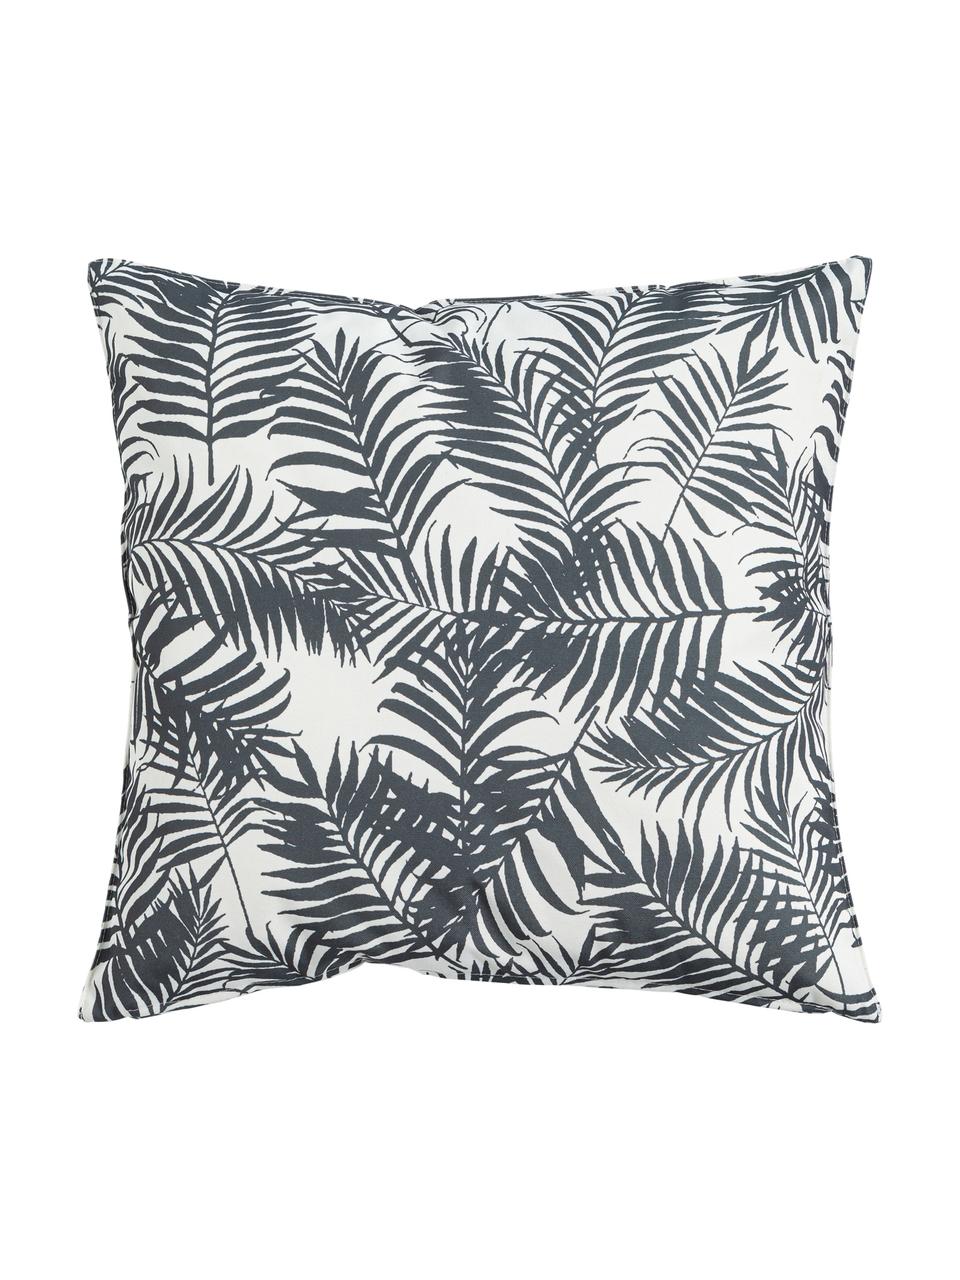 Outdoor kussen Gomera met bladpatroon, met vulling, 100% polyester, Wit, zwart, B 45 x L 45 cm